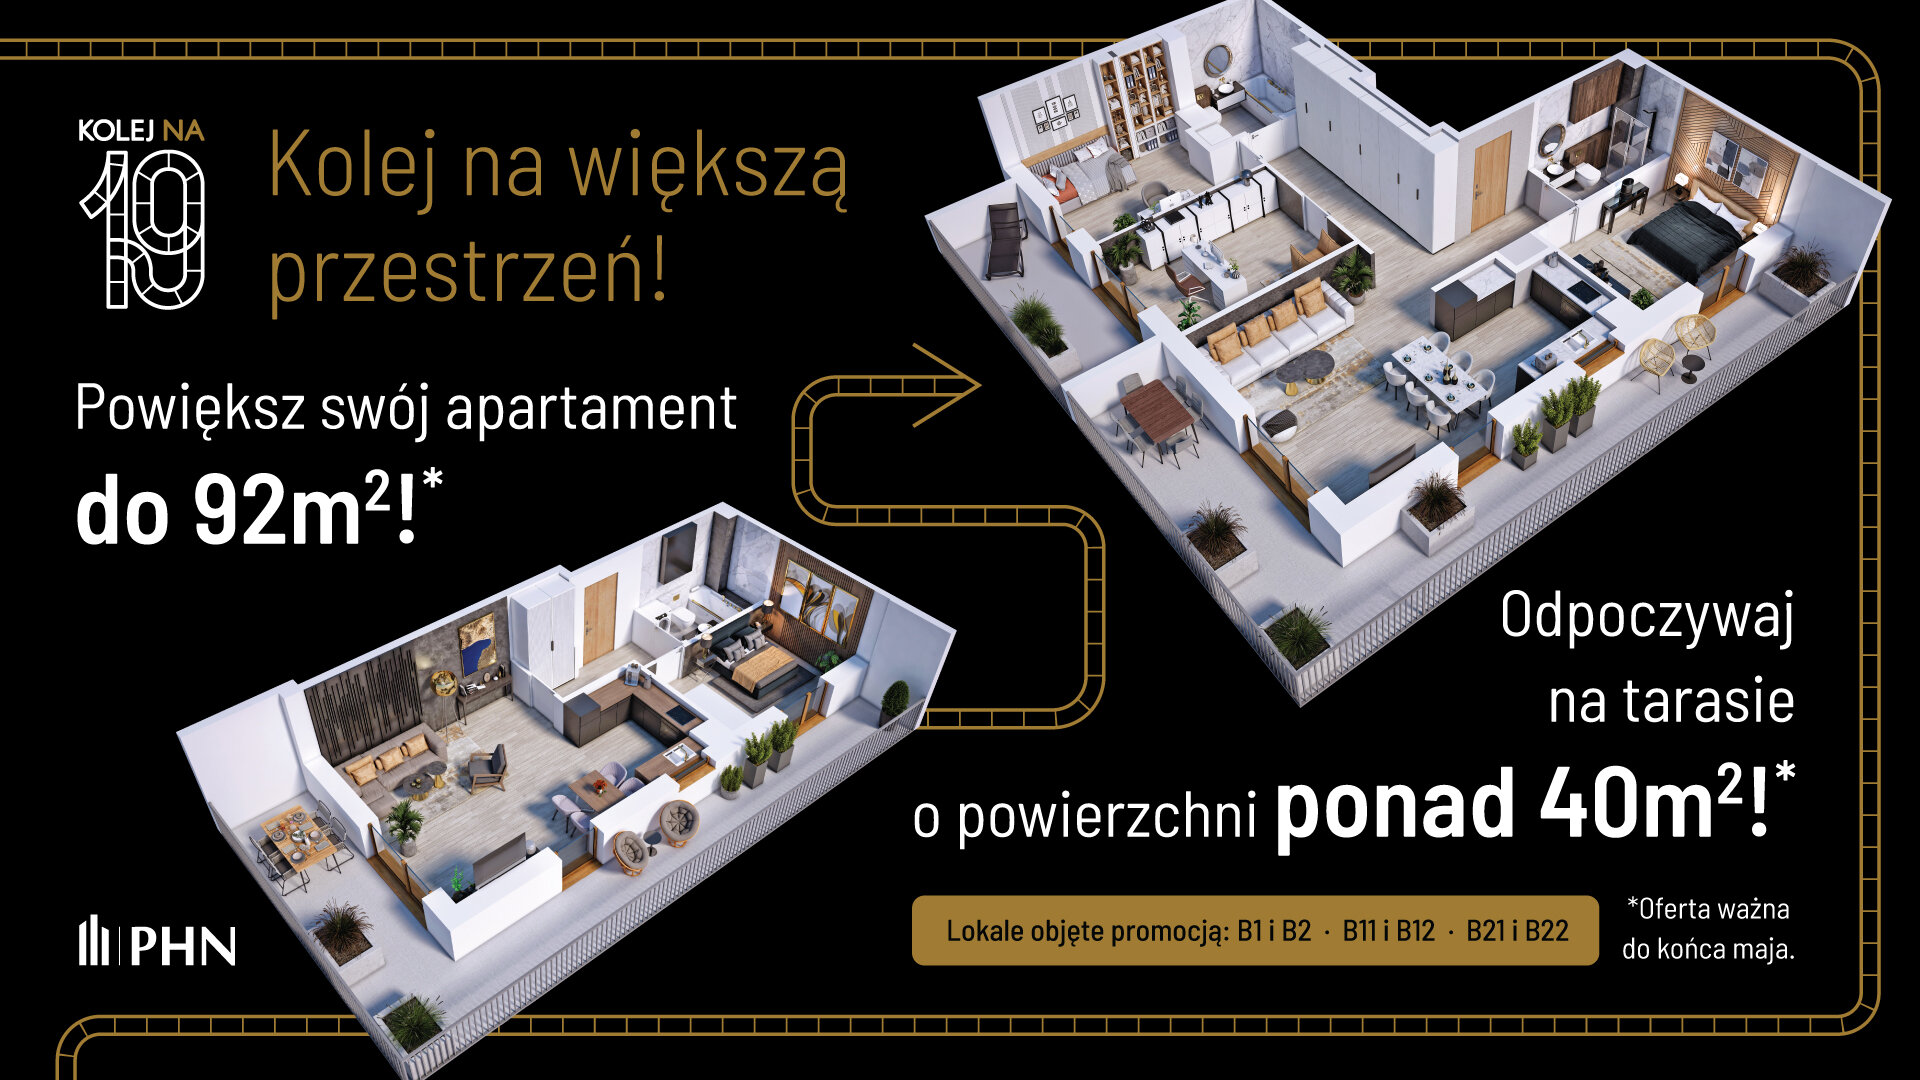 Wiosenna promocja w KOLEJ NA 19 - Apartament, 3 pokoje, Warszawa,55.79 m²,1 021 180 zł